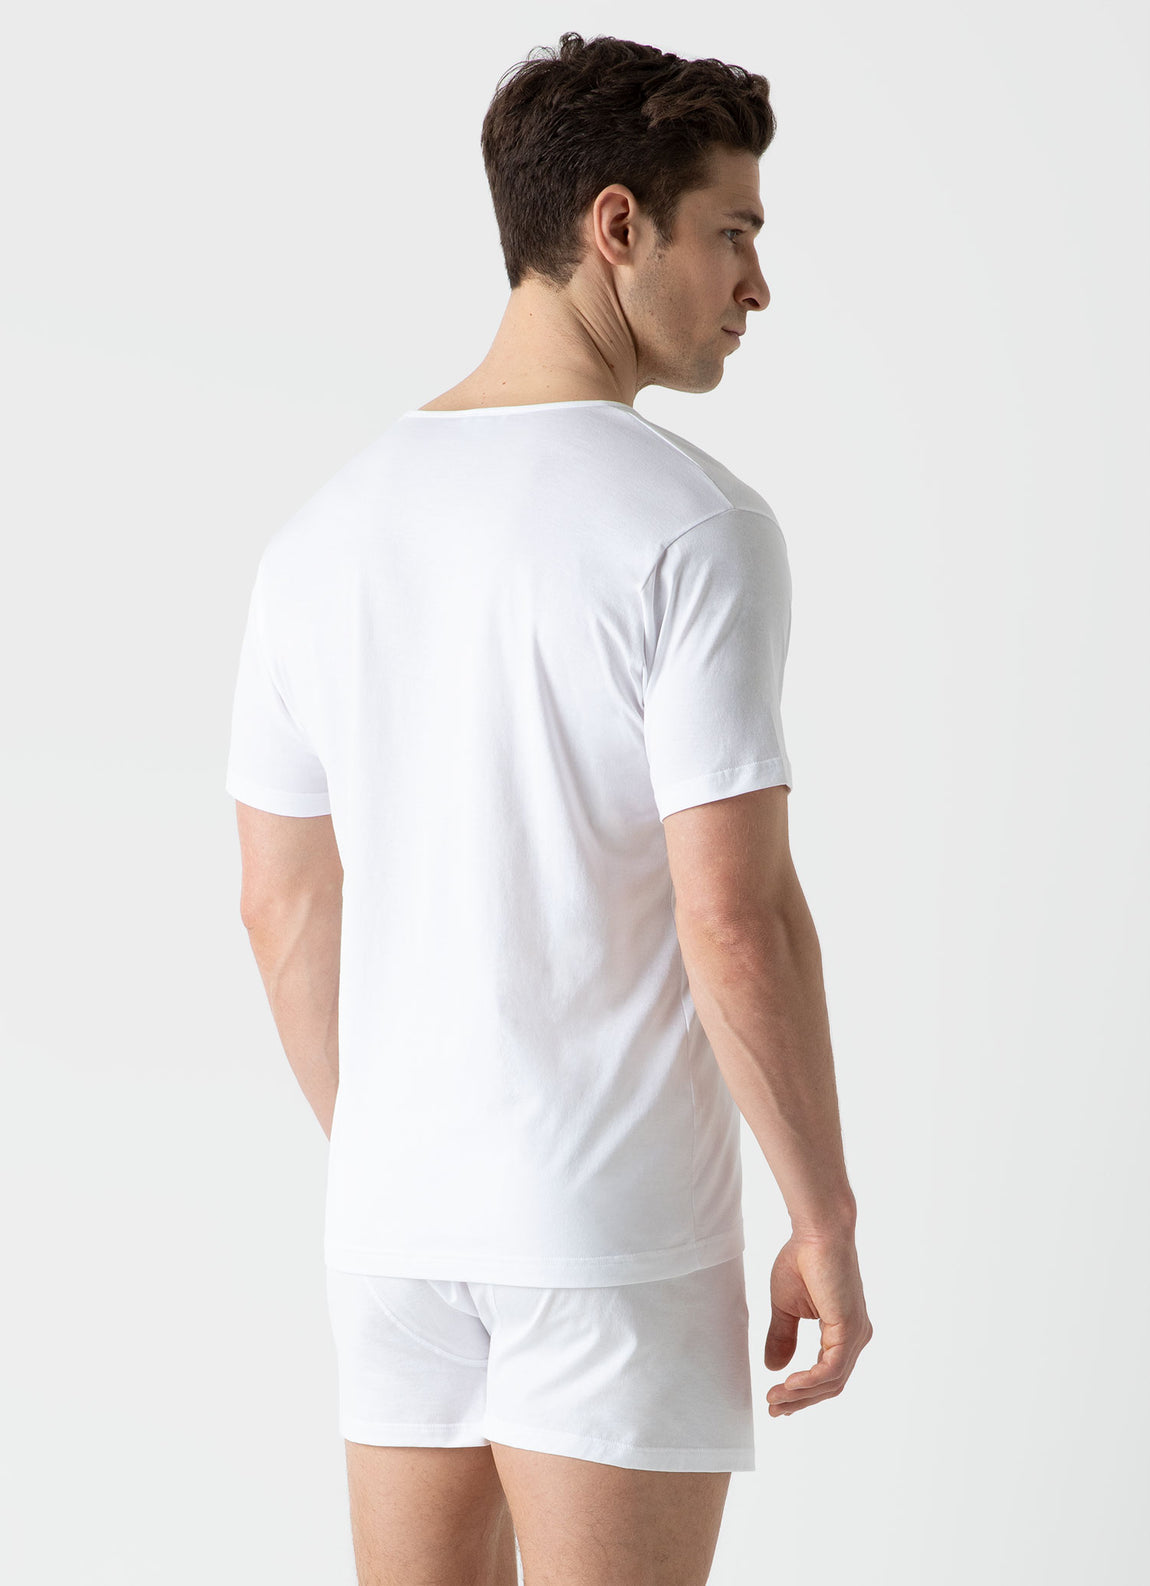 Men's Superfine Cotton Underwear V-Neck T-shirt in White | Sunspel